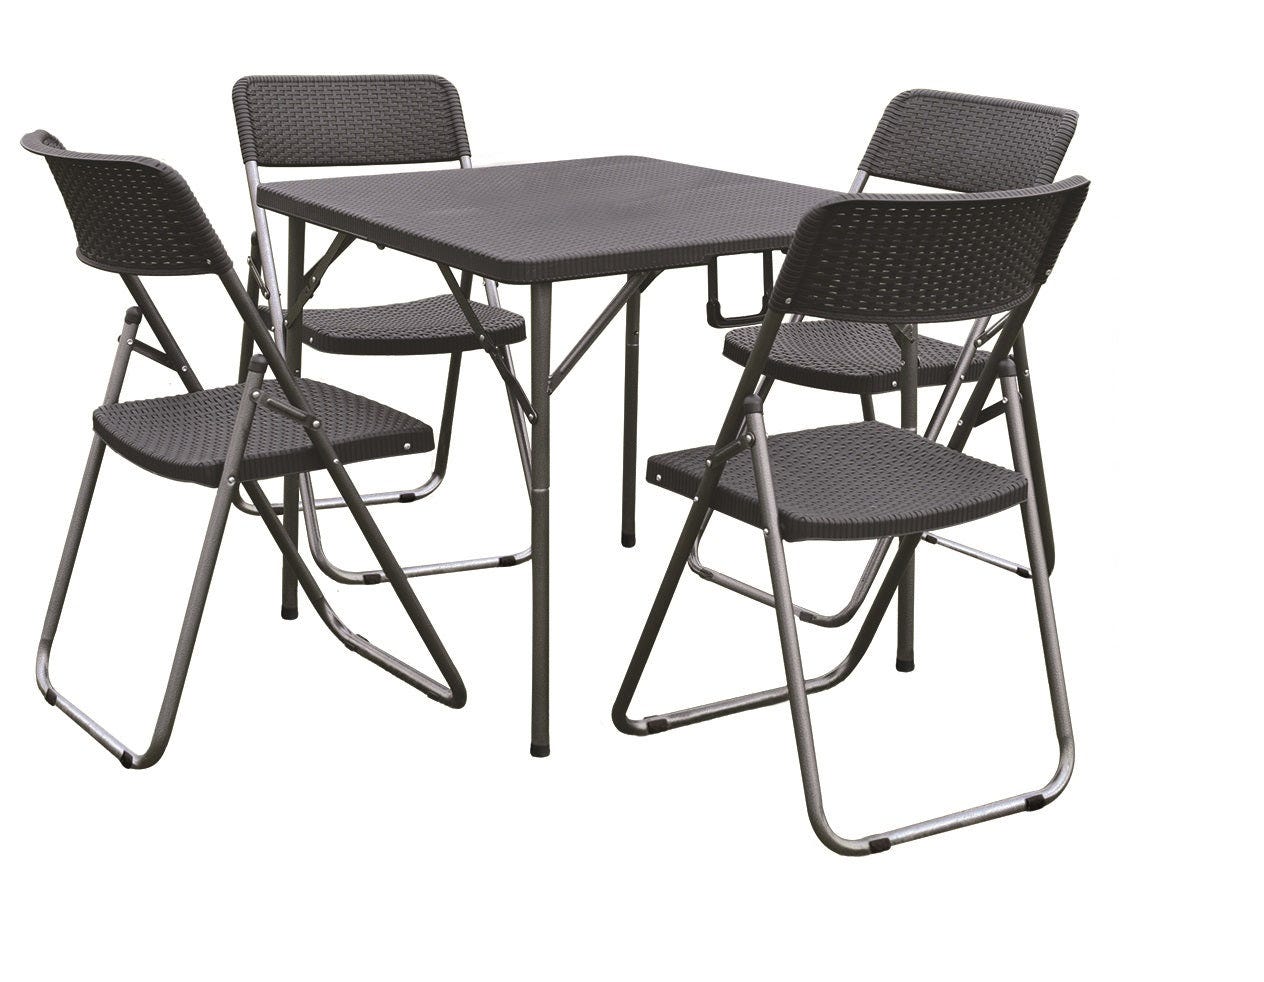 Table pliante avec chaises incluses table en résine d'acier set de 4 chaises  anthracite Garden Here you go